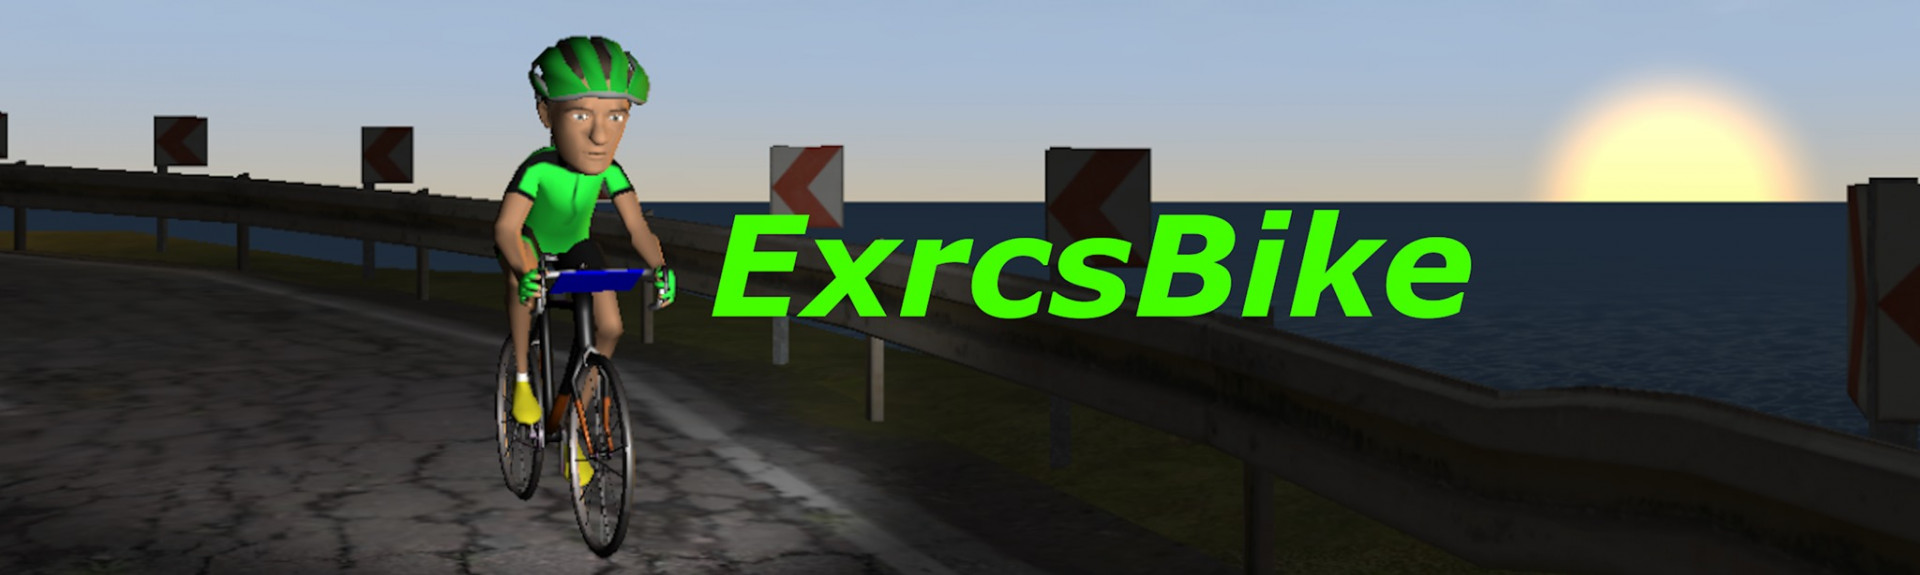 ExrcsBike